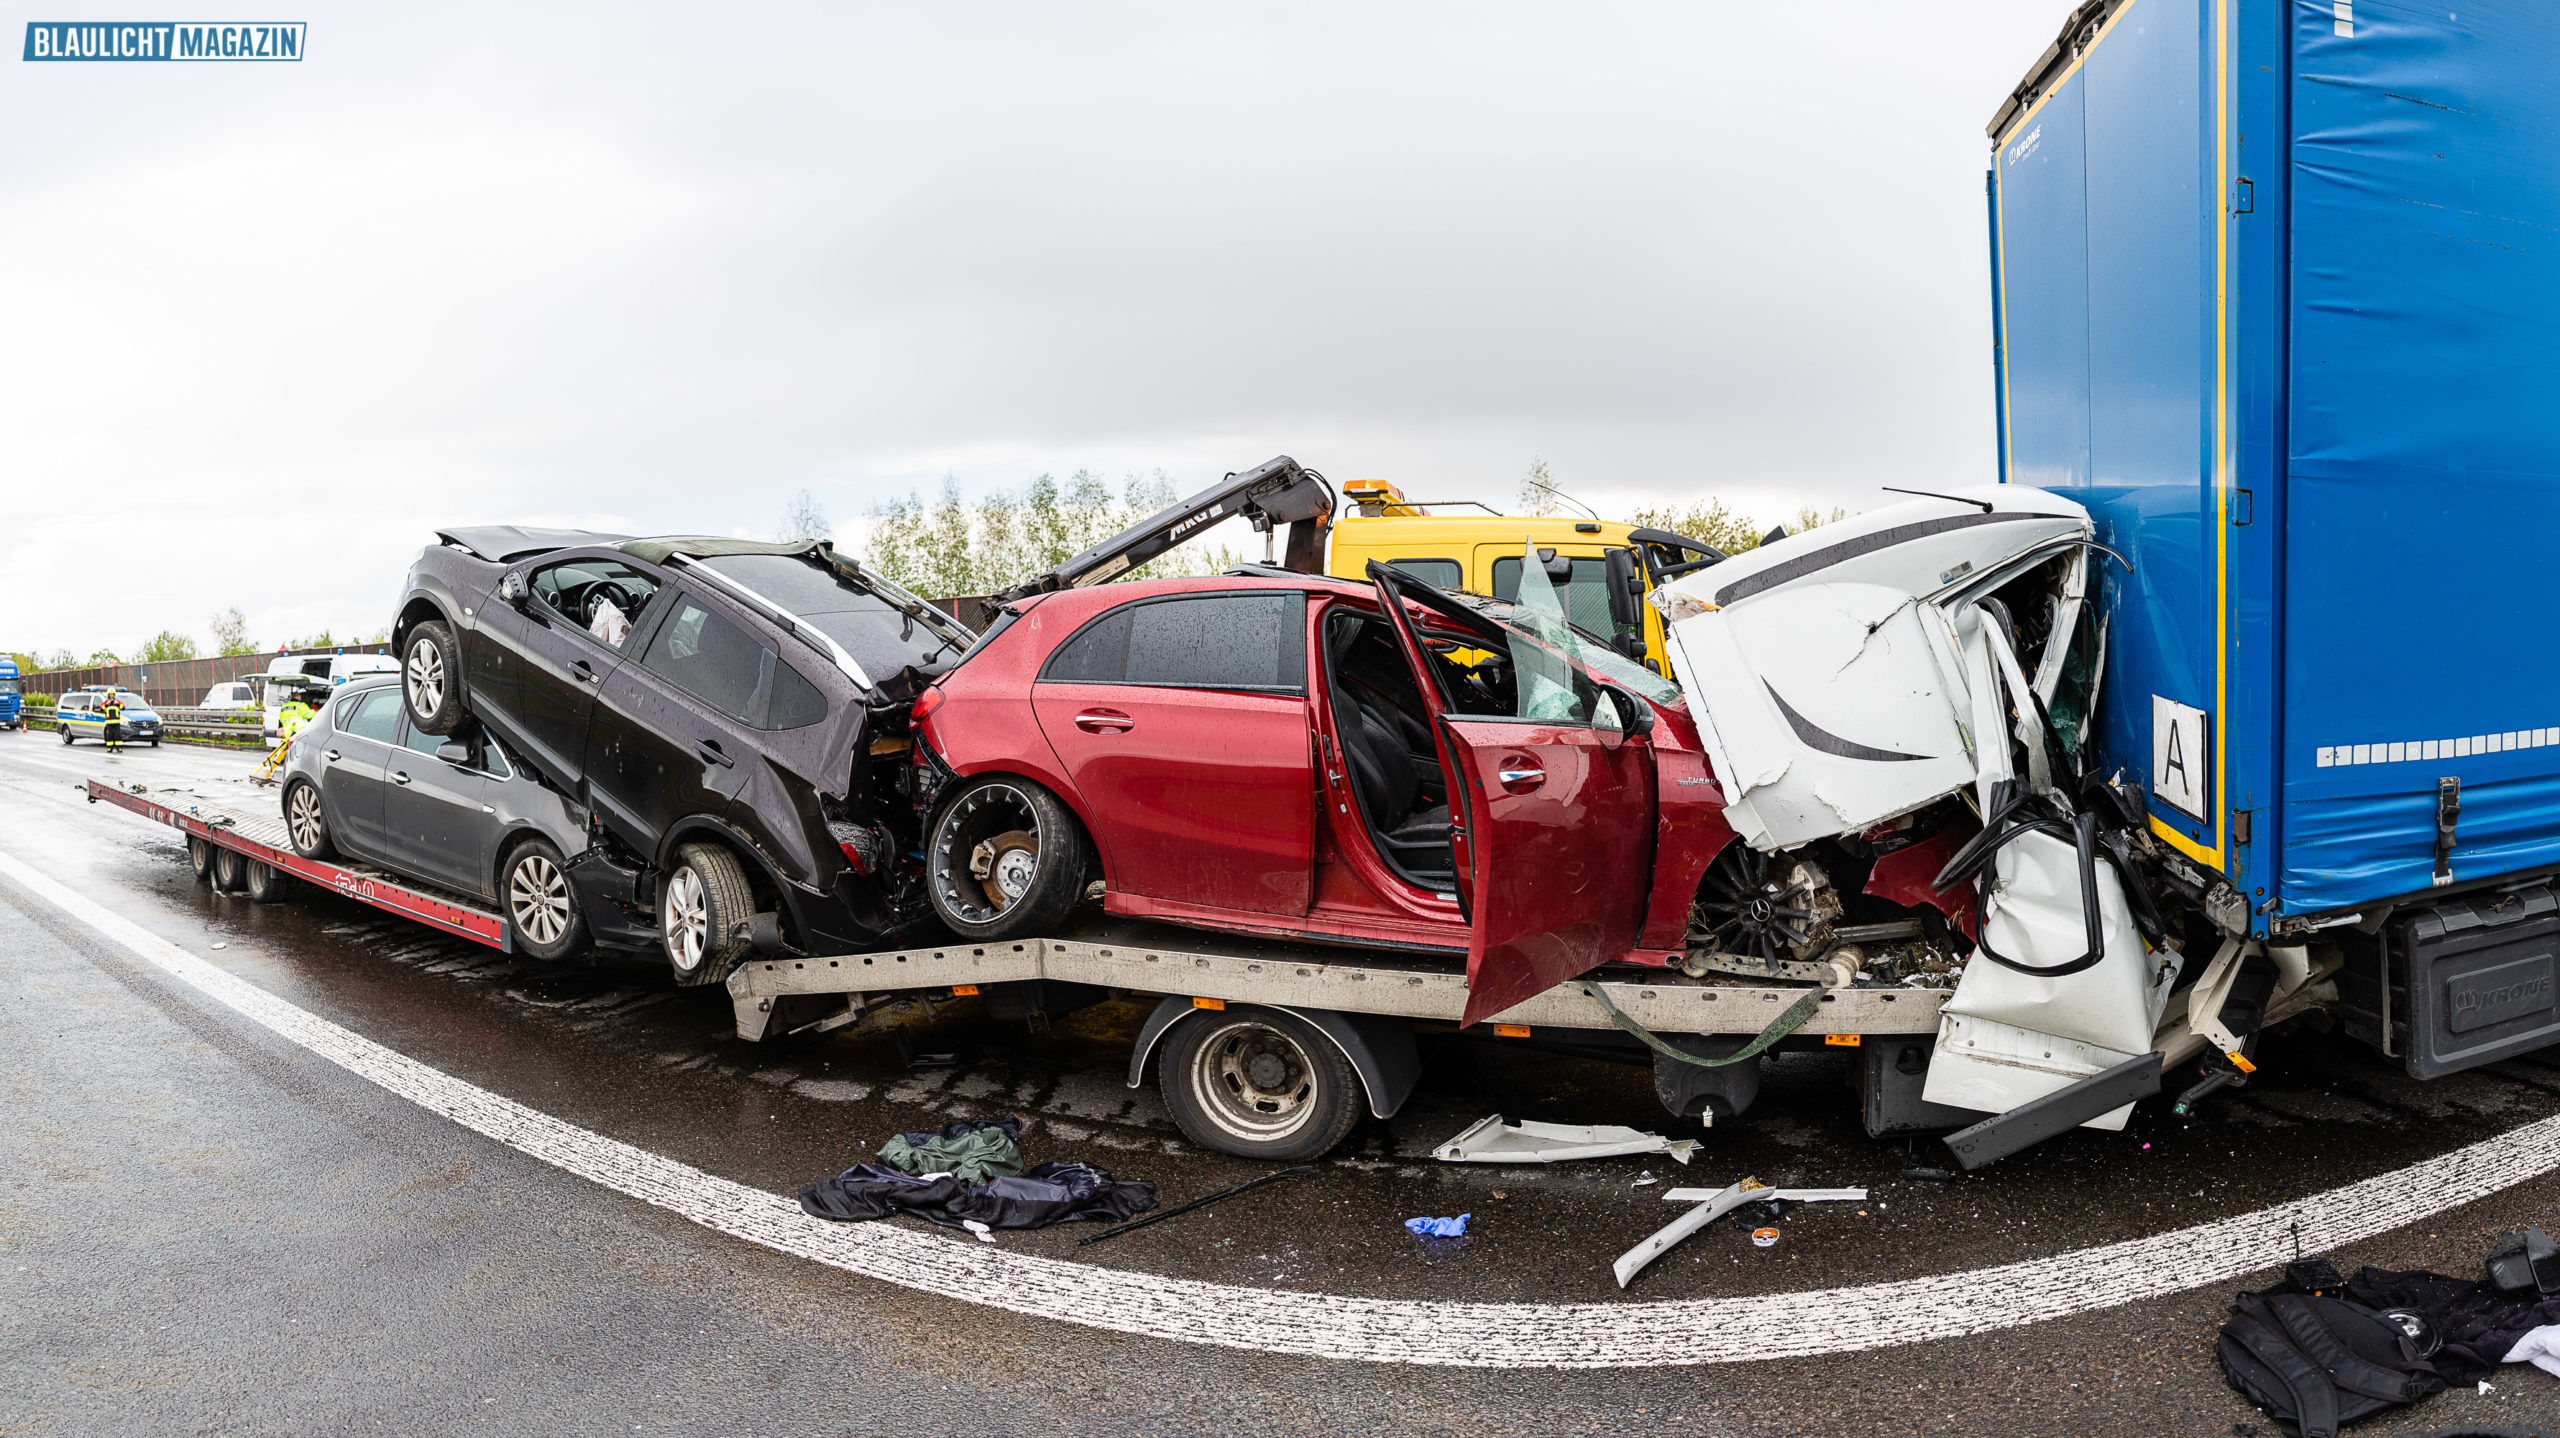 Autotransporter kracht in Stauende – Fahrer stirbt –